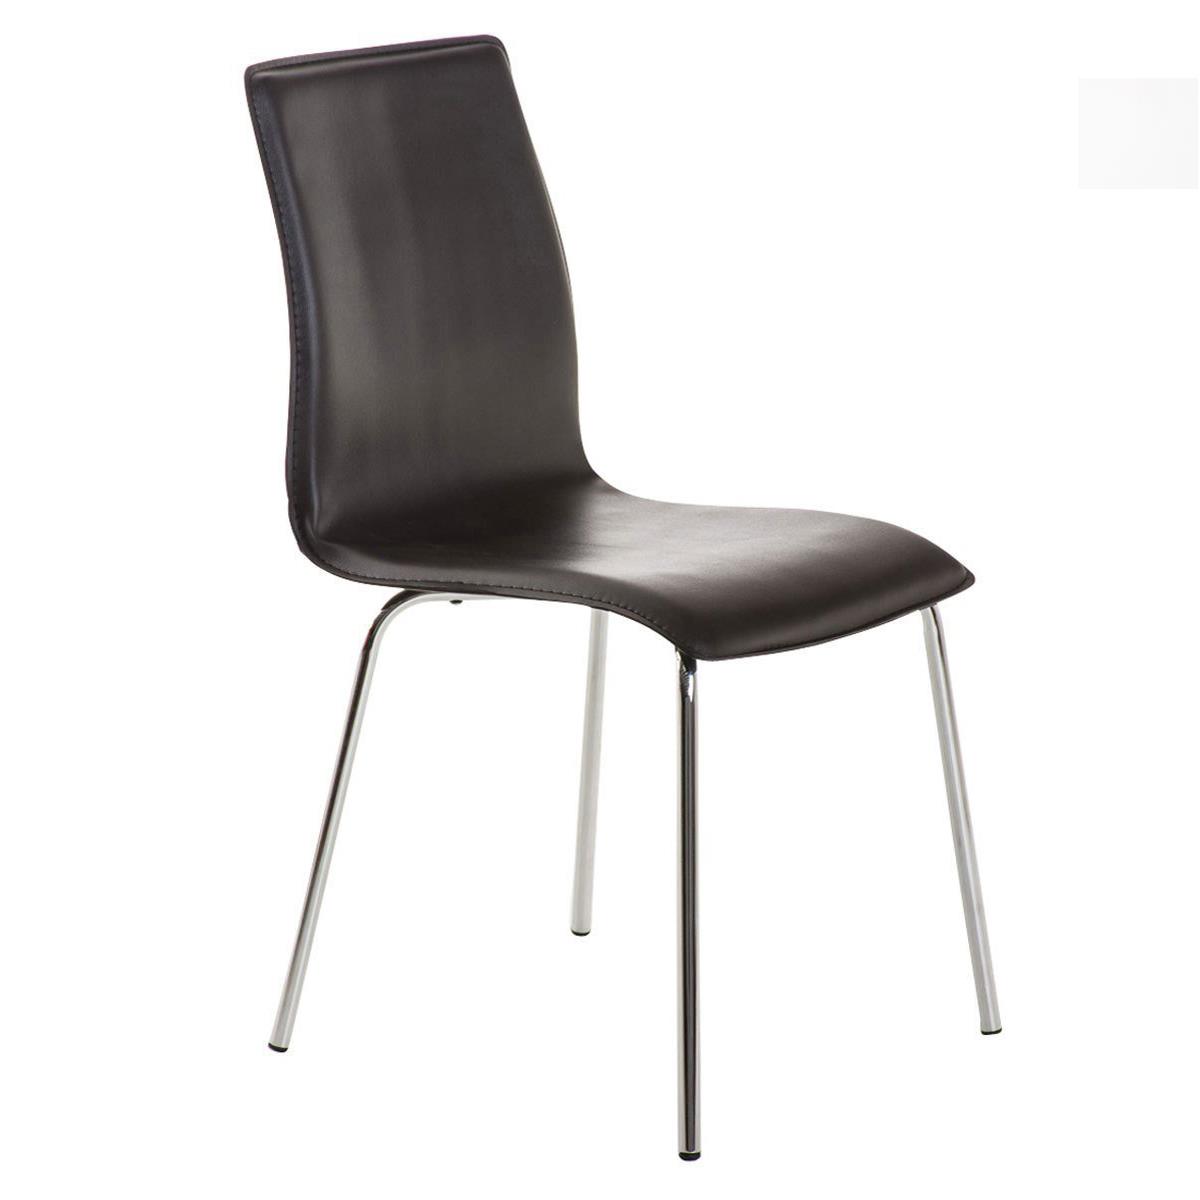 Cadeira de Visita MIKI, Design Exclusivo, Forrada Em Pele, Cor Preto